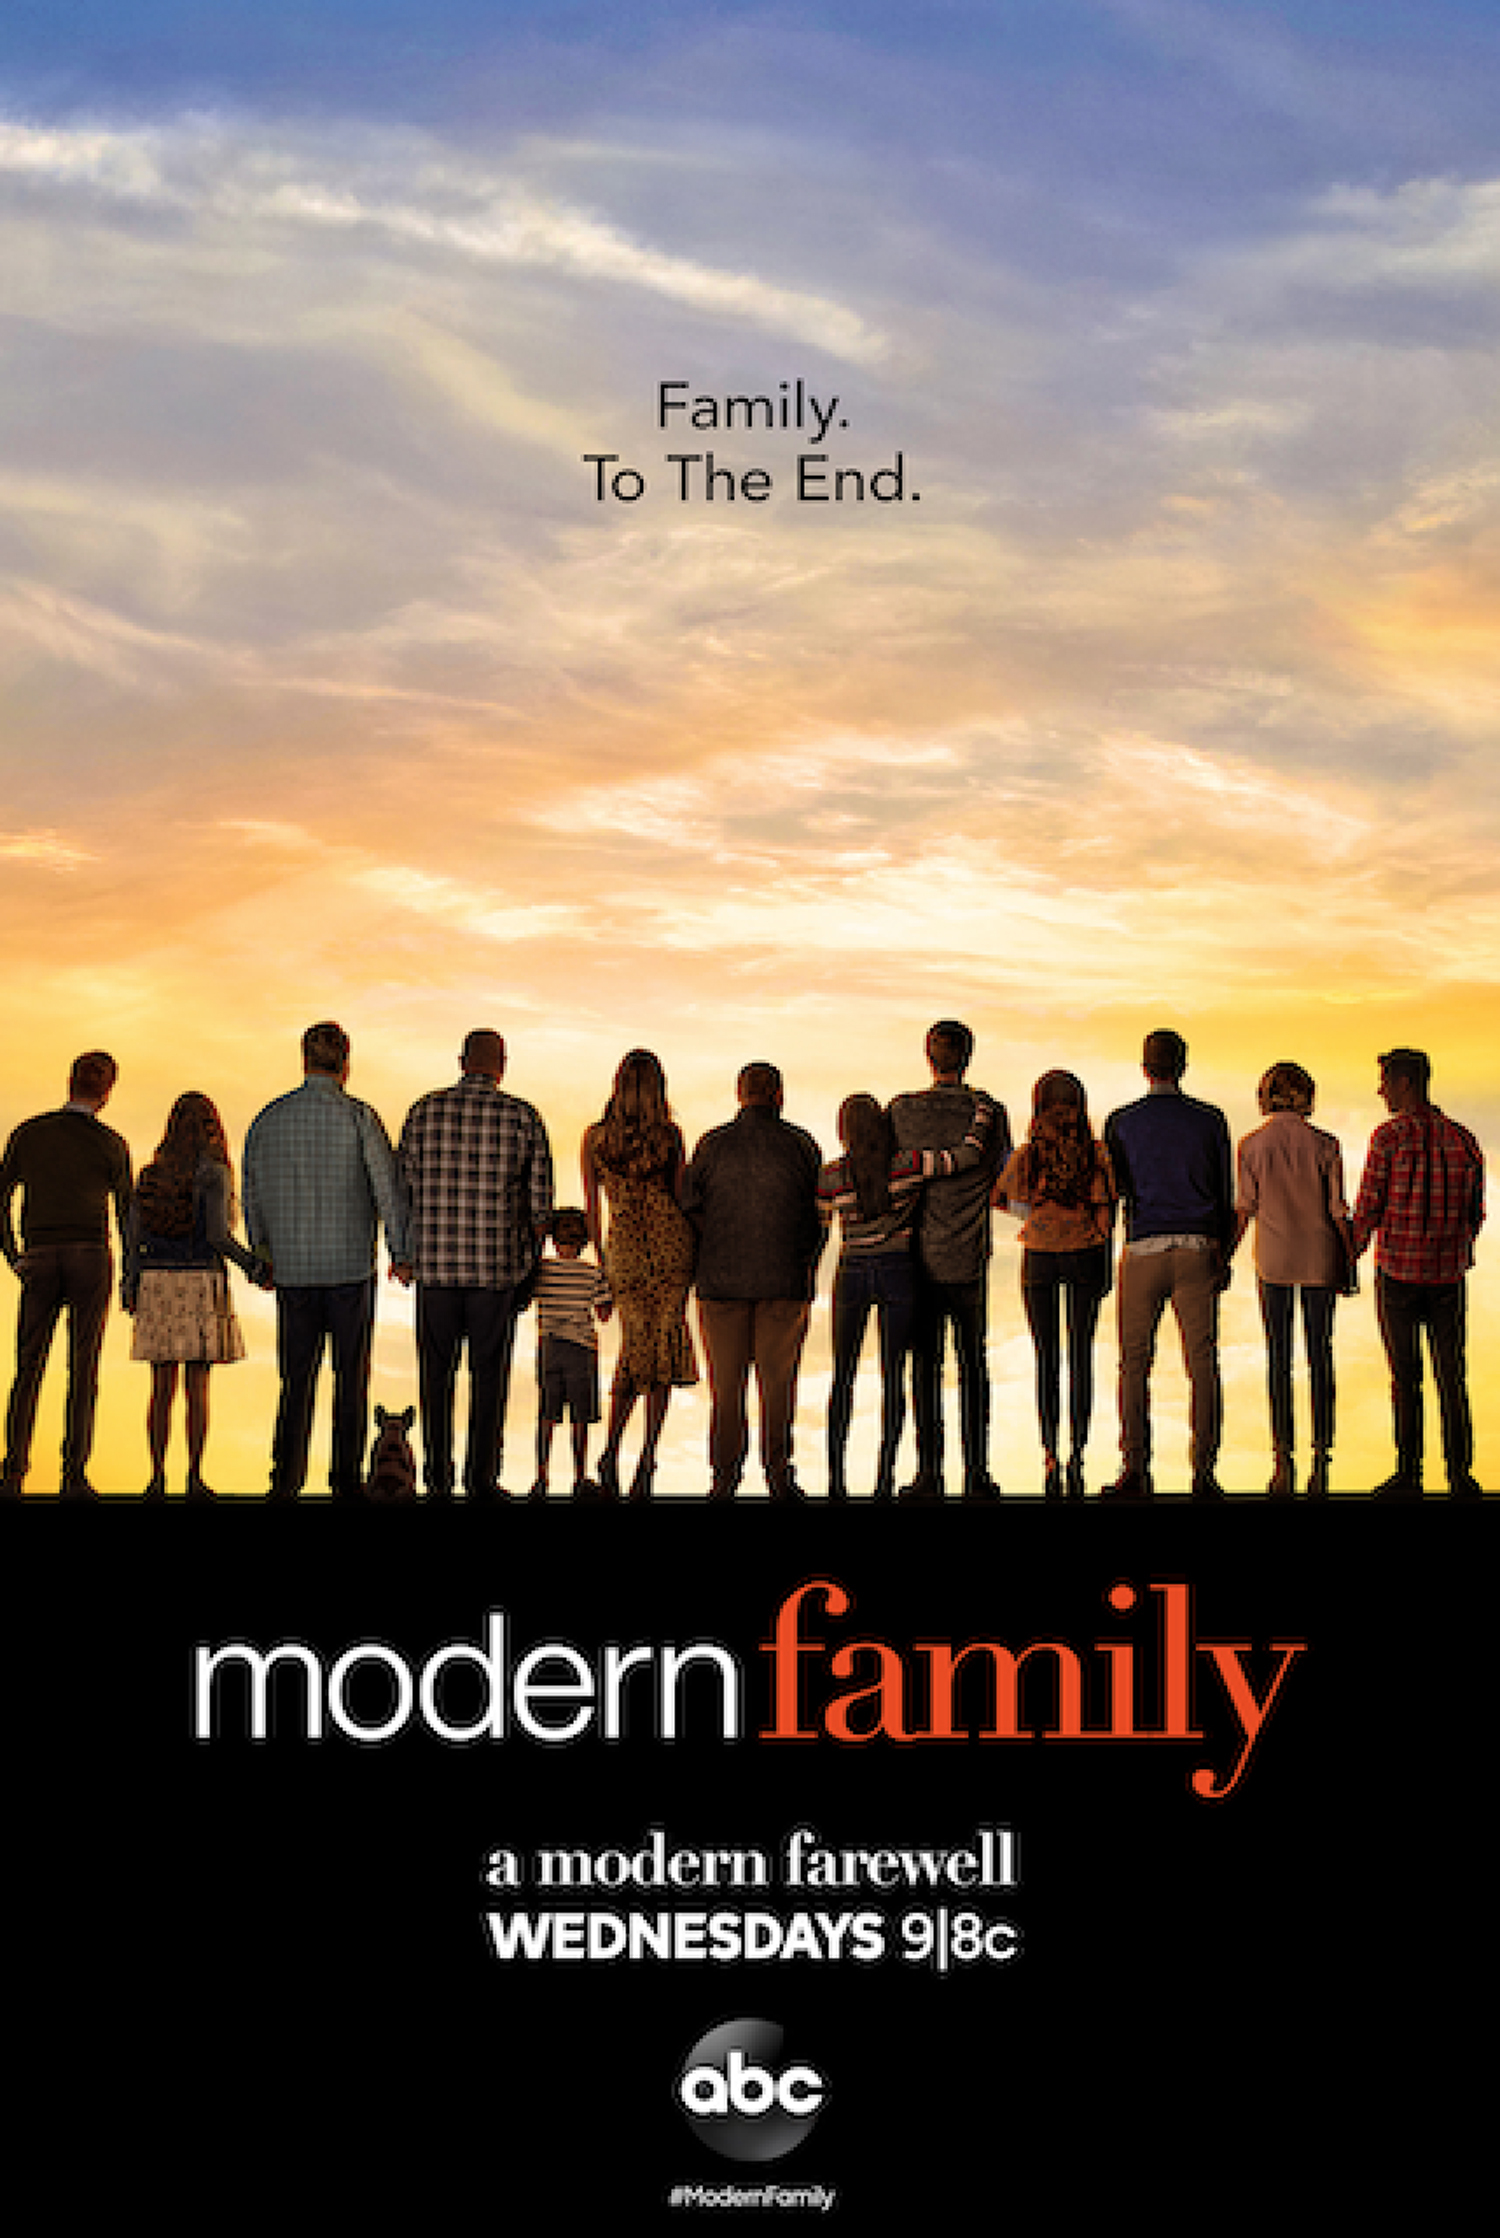 the modern family